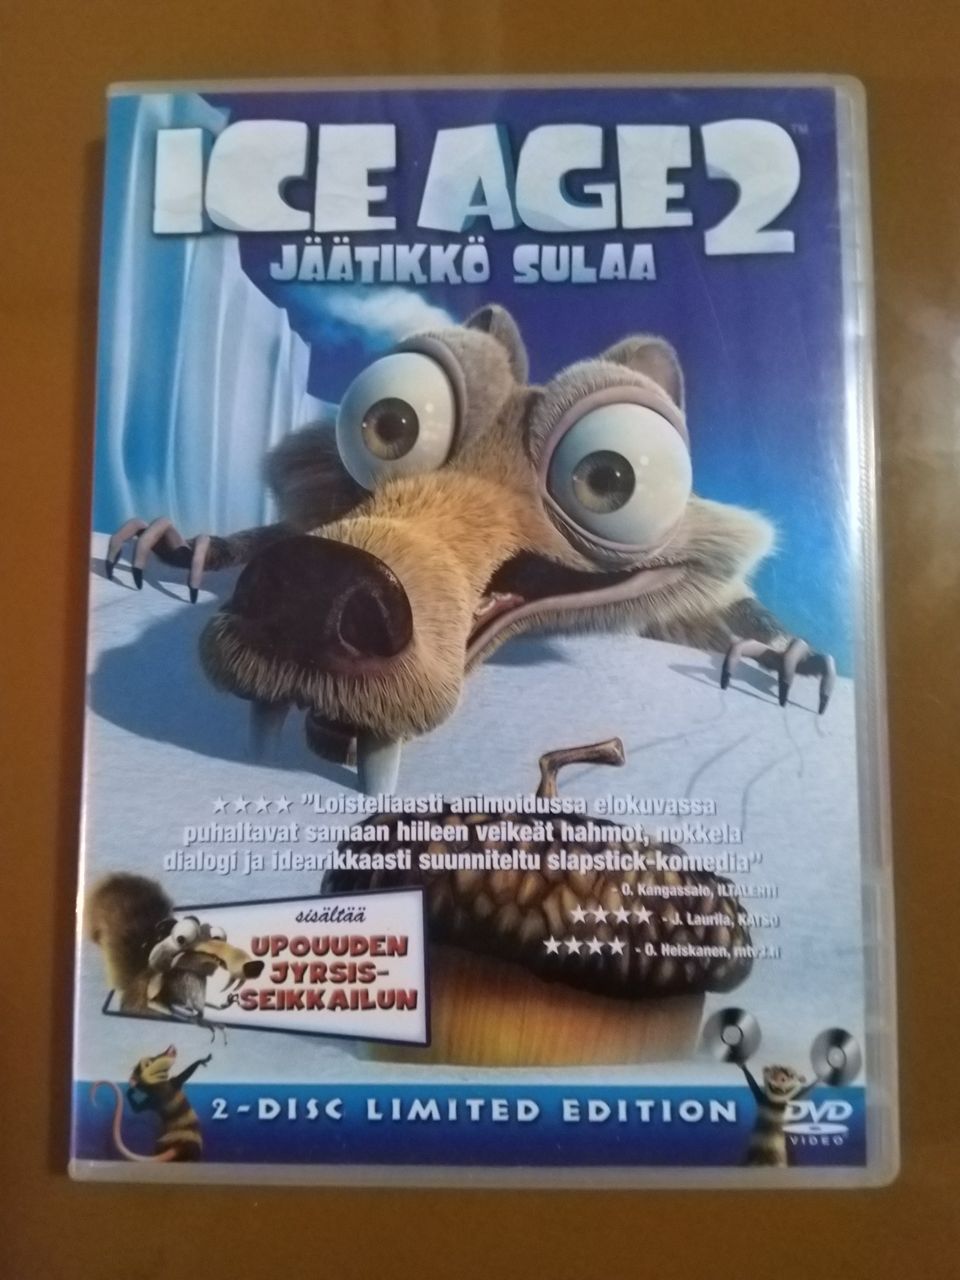 Ice age 2 jäätikkö sulaa dvd